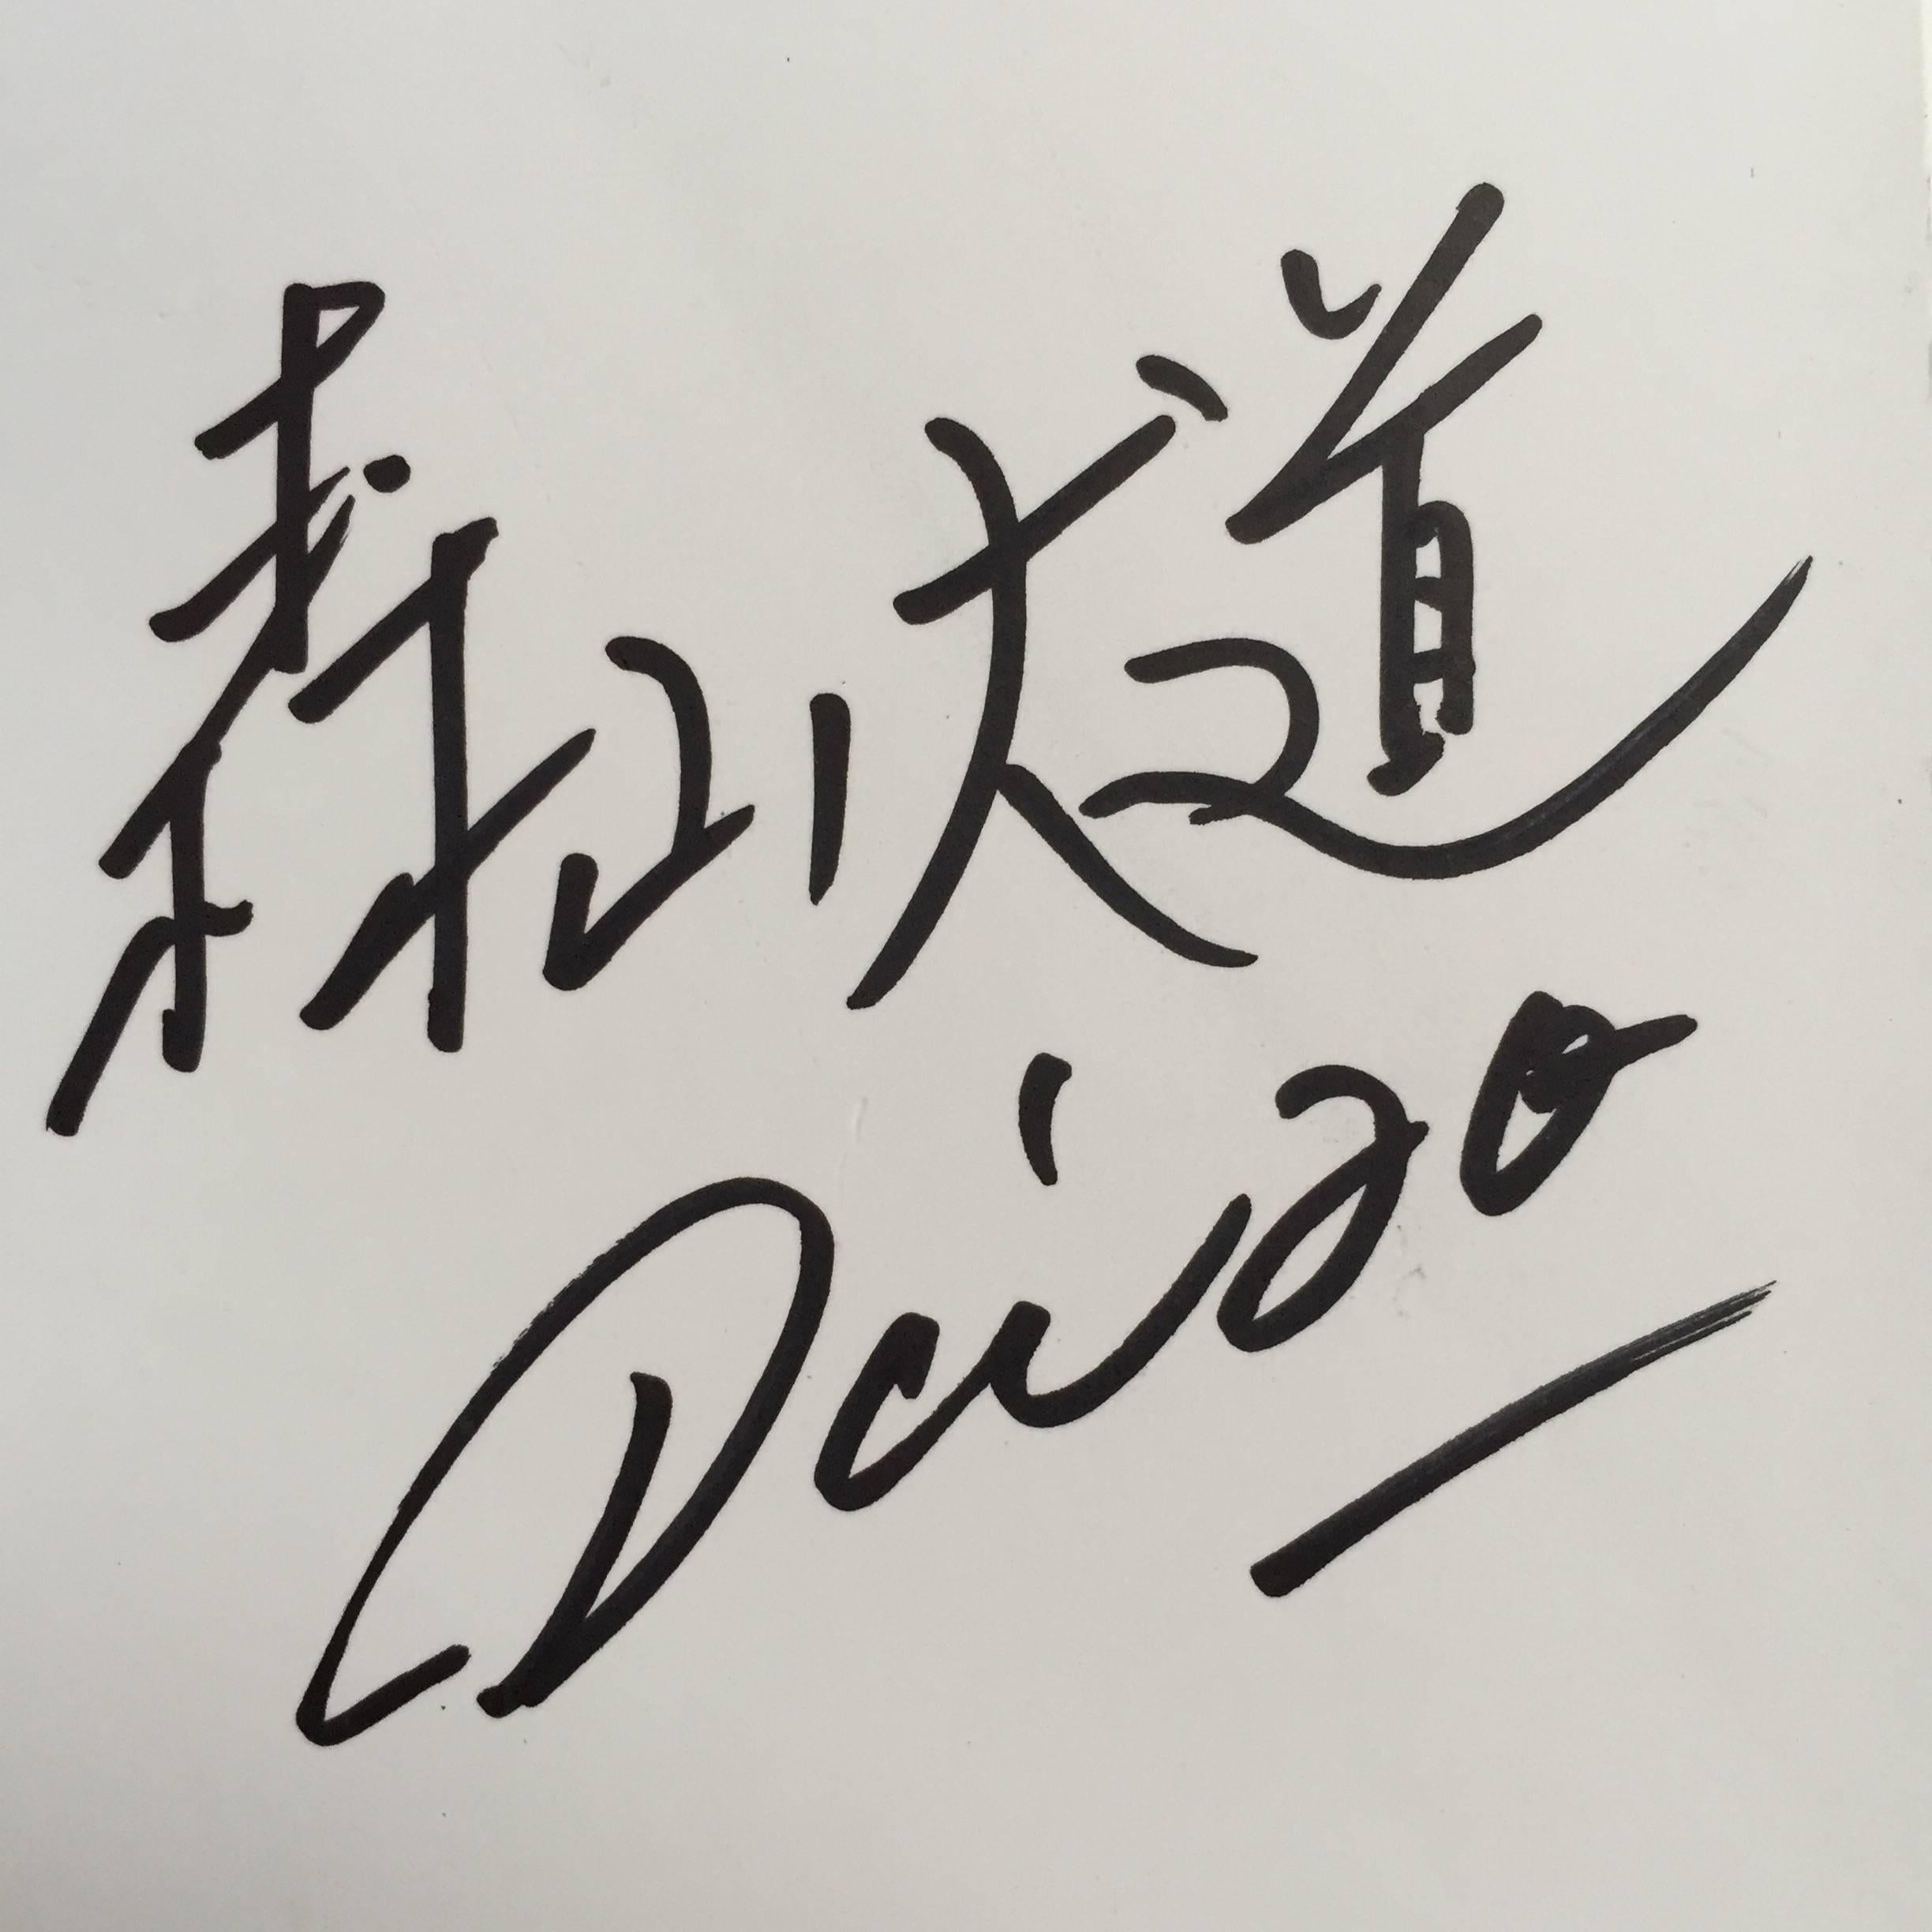 Première édition signée, publiée par Getsuyosha, Japon, 2006. Signée en page de garde par Daido Moriyama.

Signé sur la première page de garde par Daido Moriyama, et dans le format classique 